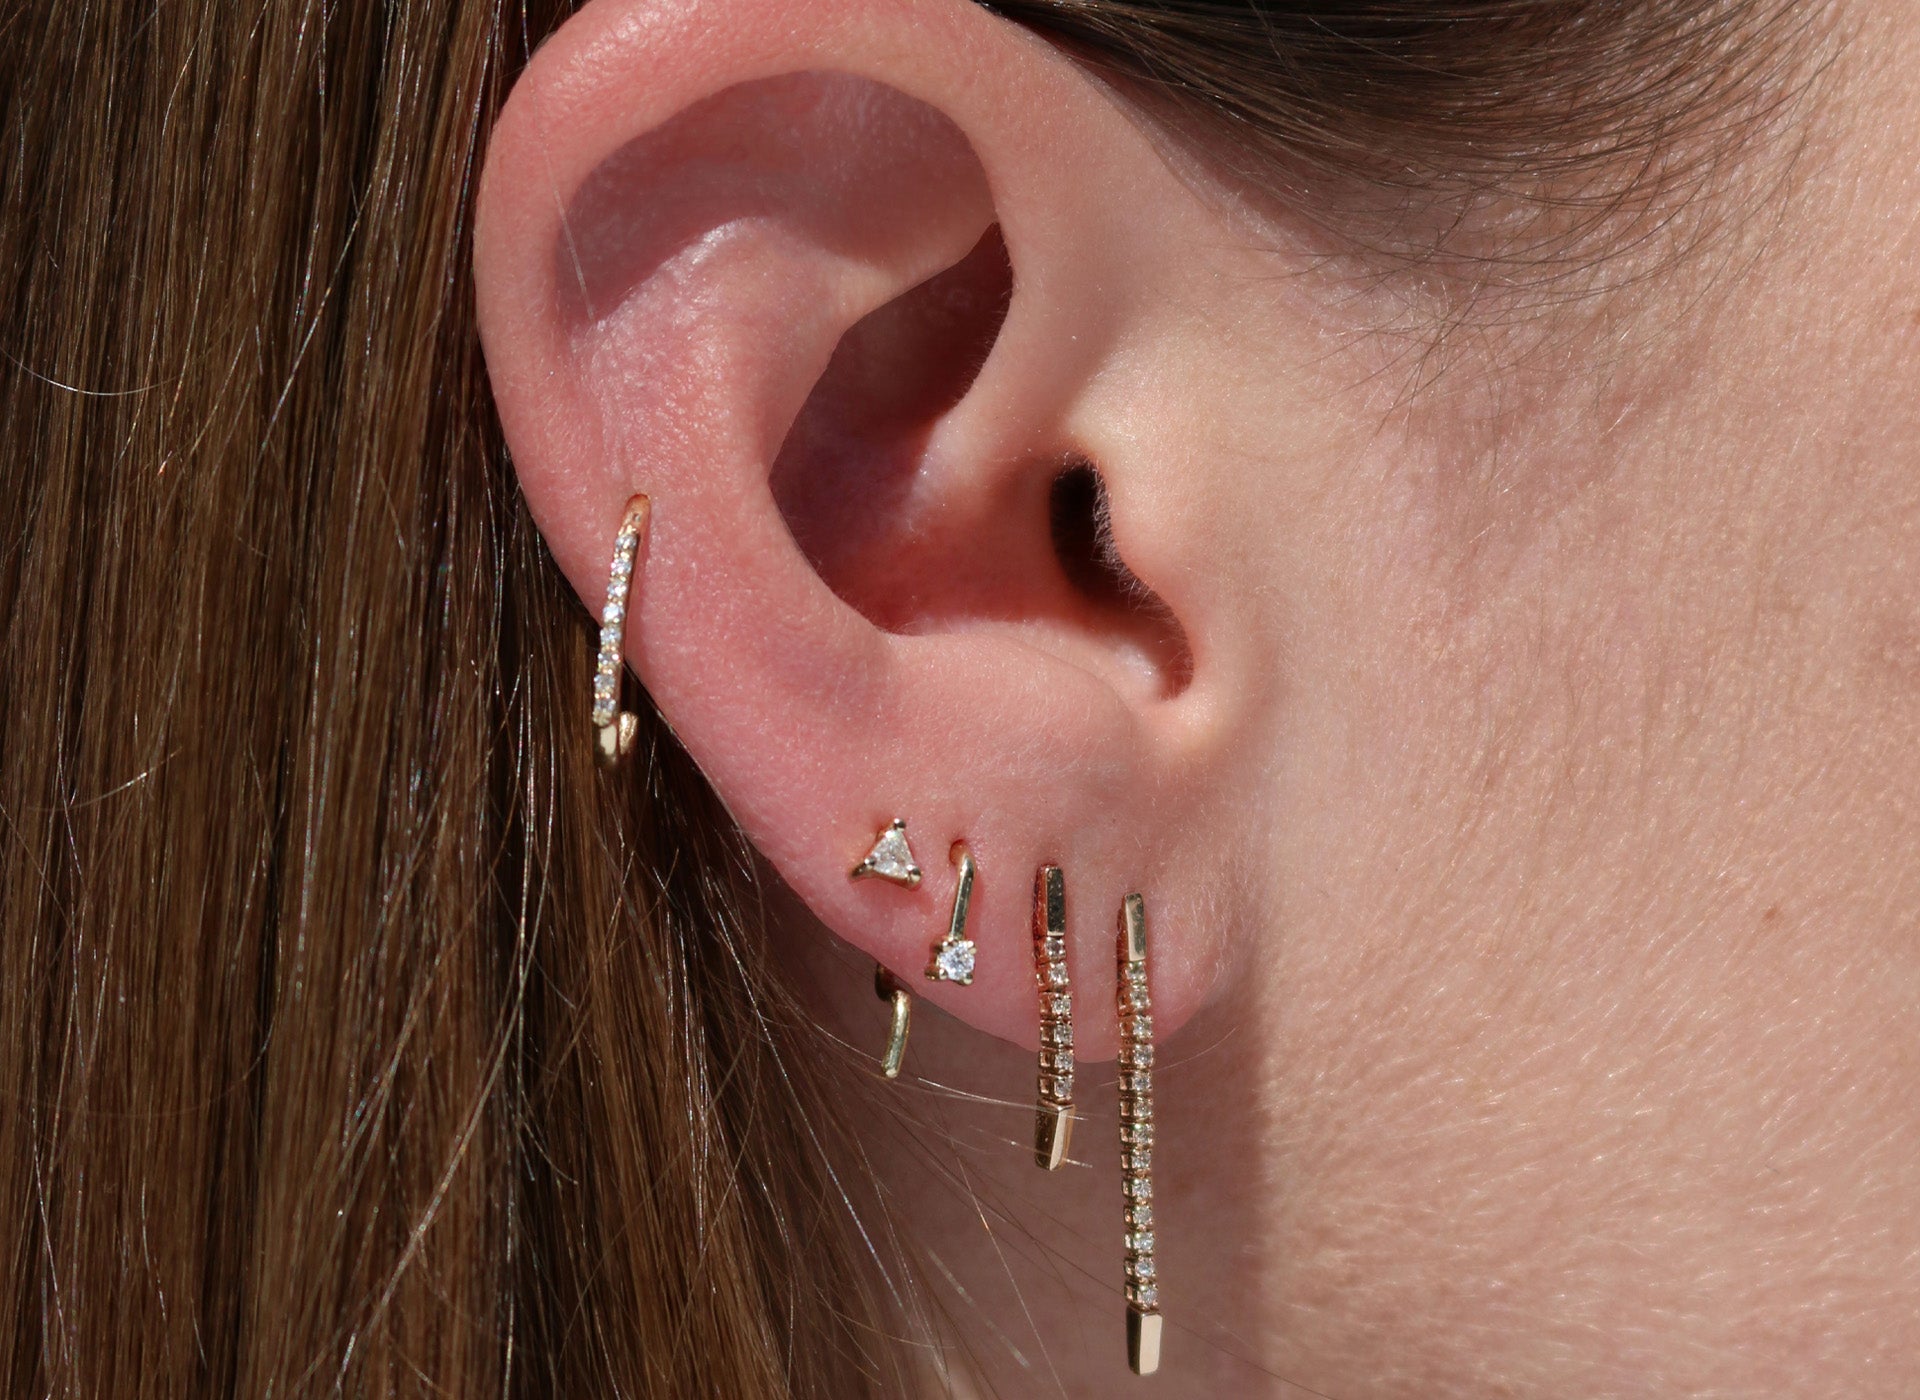 Earrings, lobe piercing, ear stack, conch piercing with diamond earrings.